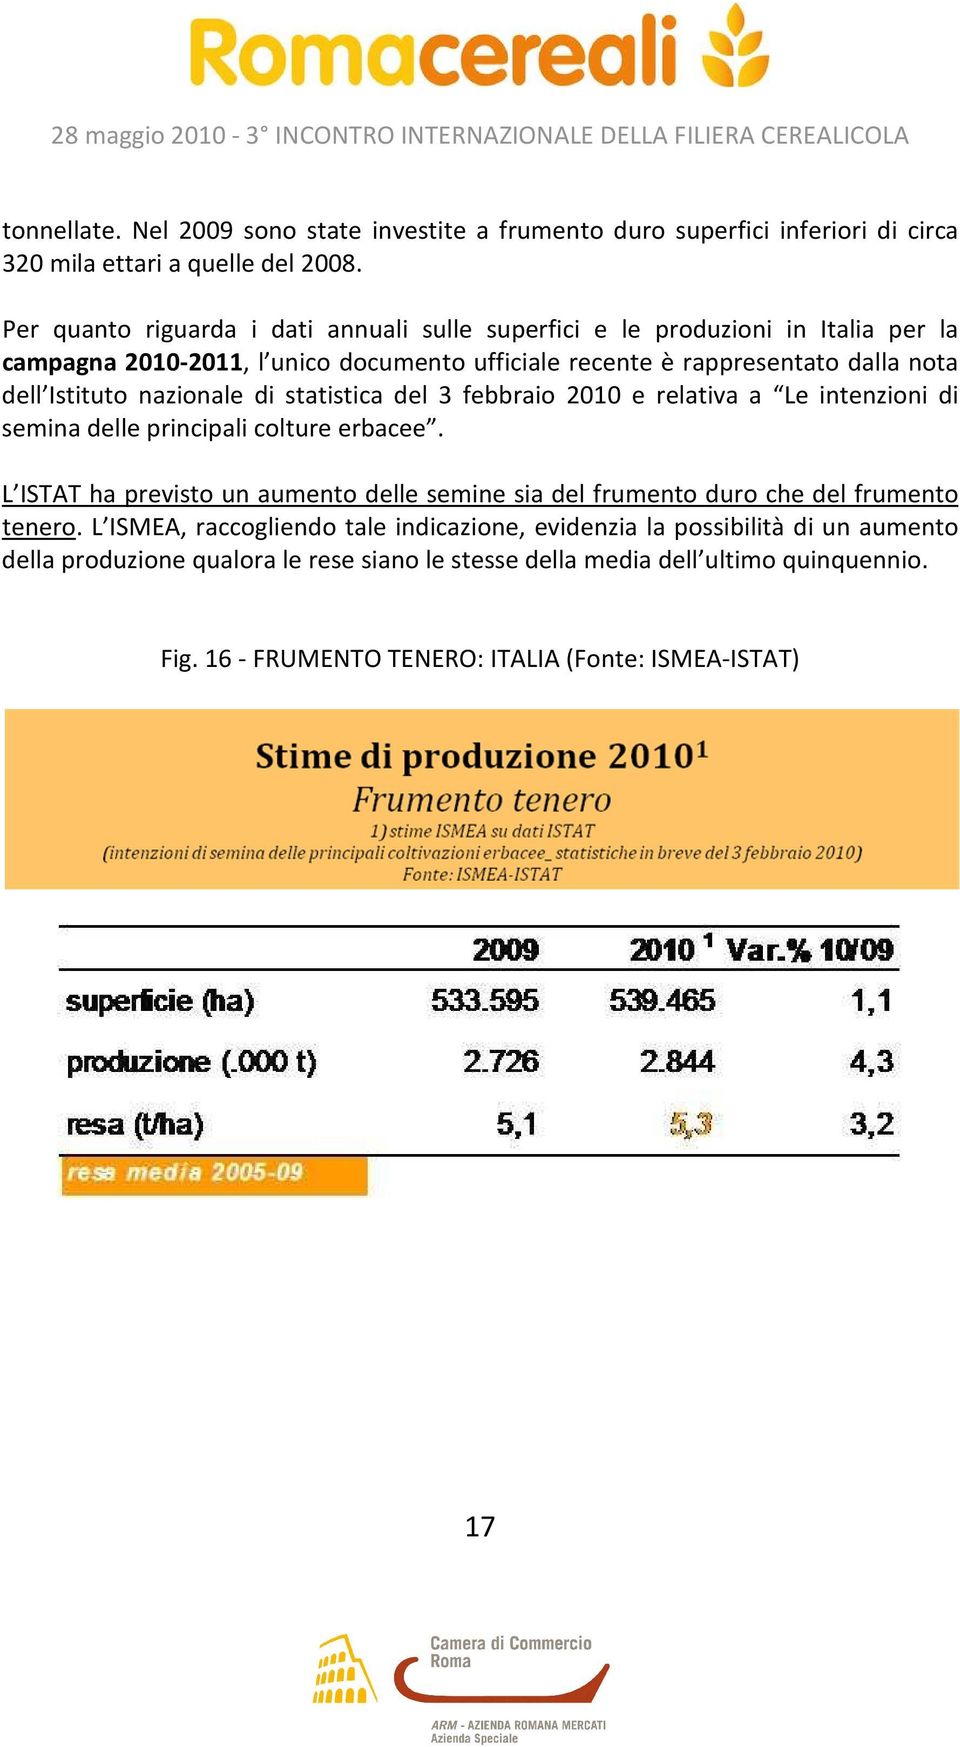 nazionale di statistica del 3 febbraio 2010 e relativa a Le intenzioni di semina delle principali colture erbacee.